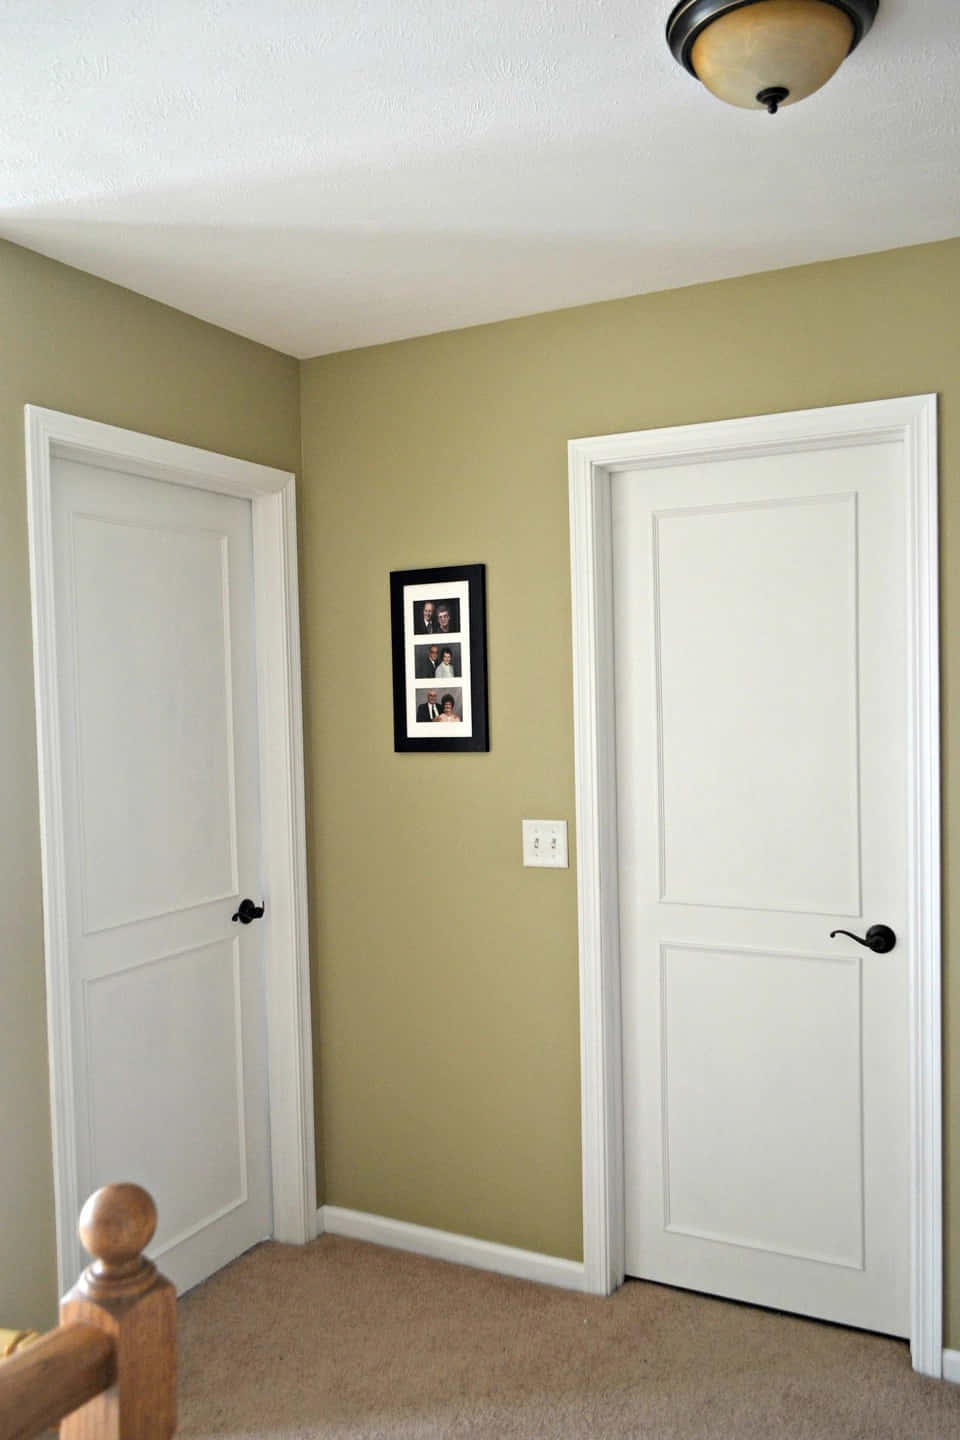 Etværelse Med To Hvide Døre Og Et Billede.